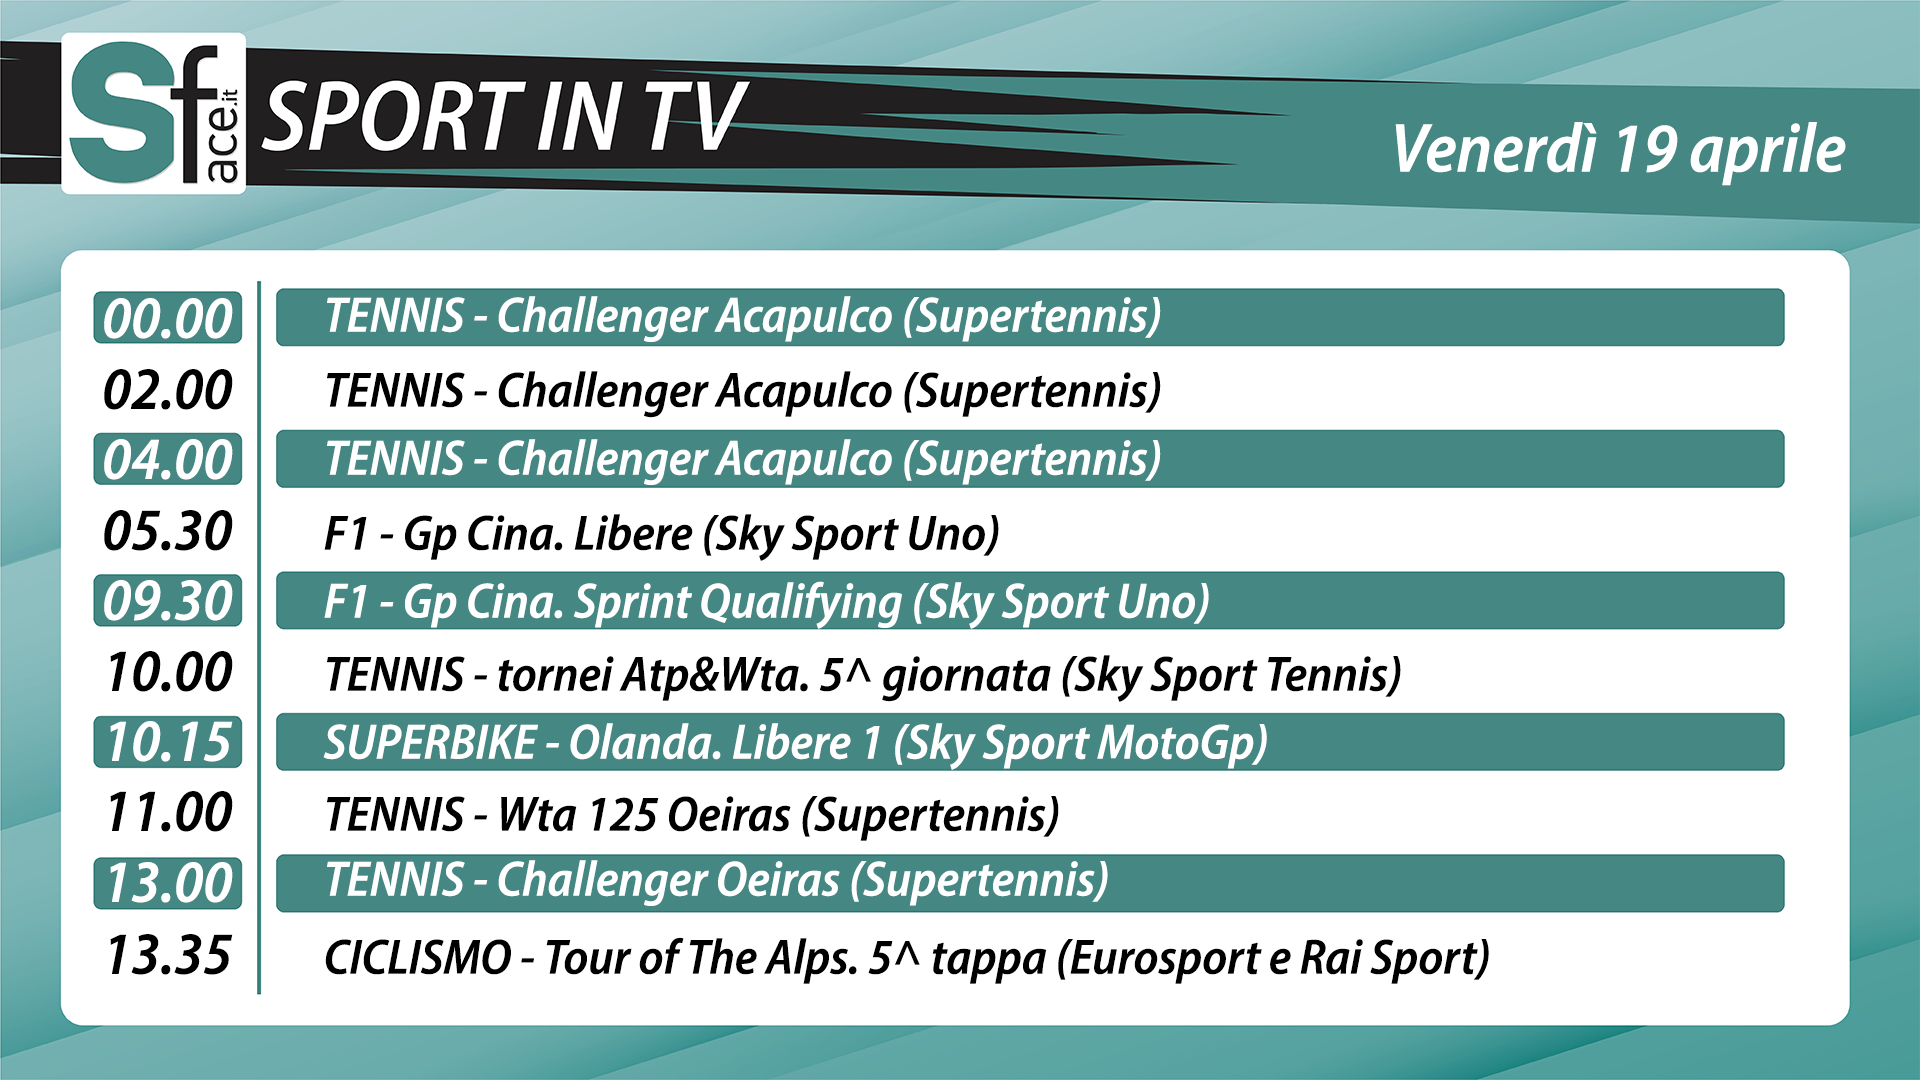 Sport in tv oggi venerdì 19 aprile: programma e orari di tutti gli eventi